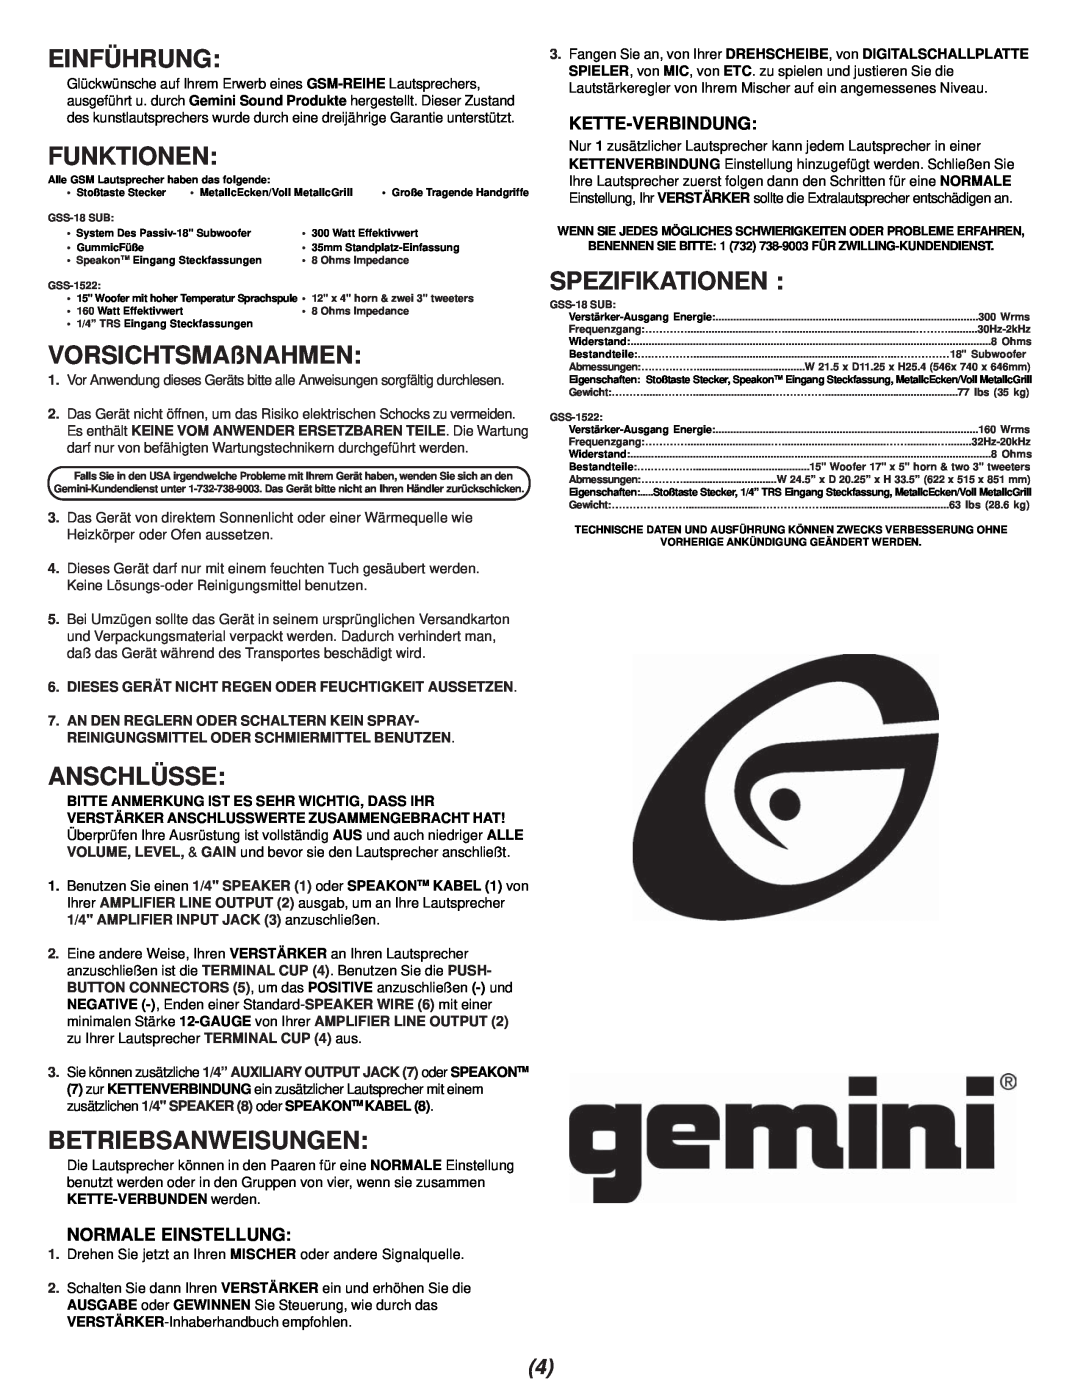 Gemini GSS-18, GSS-1522 manual Einführung, Funktionen, VORSICHTSMAßNAHMEN, Anschlüsse, Betriebsanweisungen, Spezifikationen 